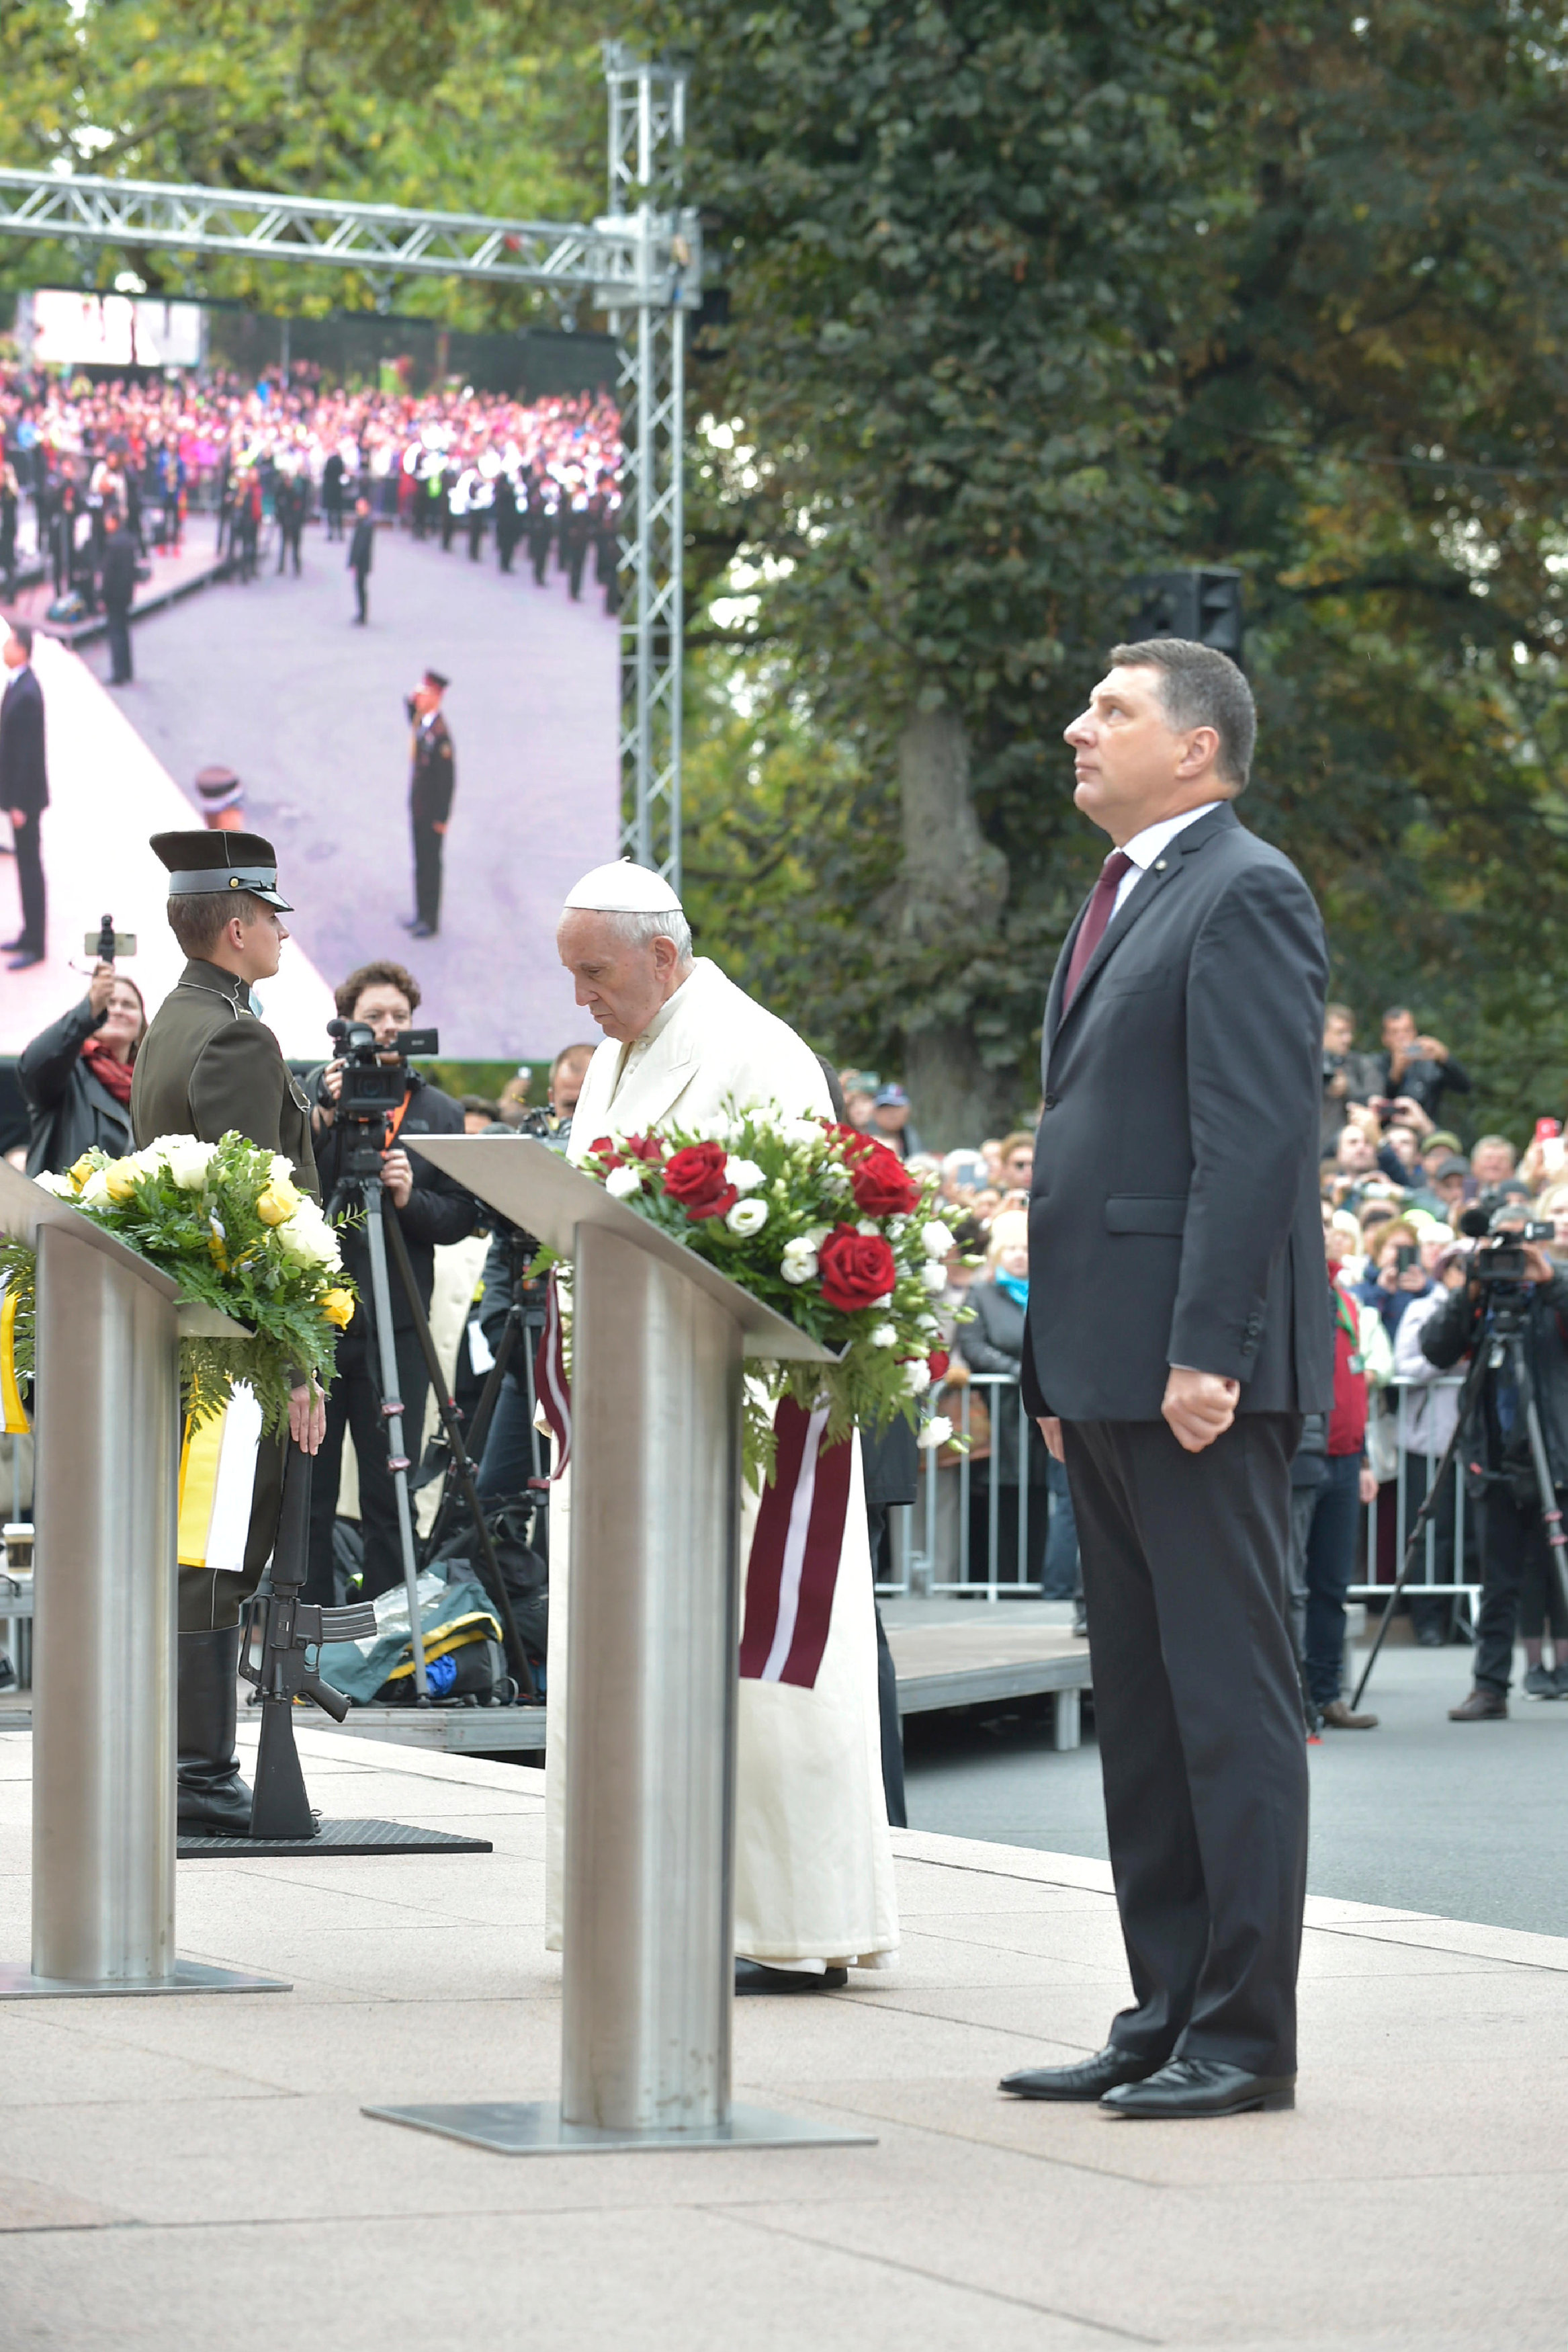 البابا ورئيس لاتفيا اثناء وضع الزهور على نصب الحرية